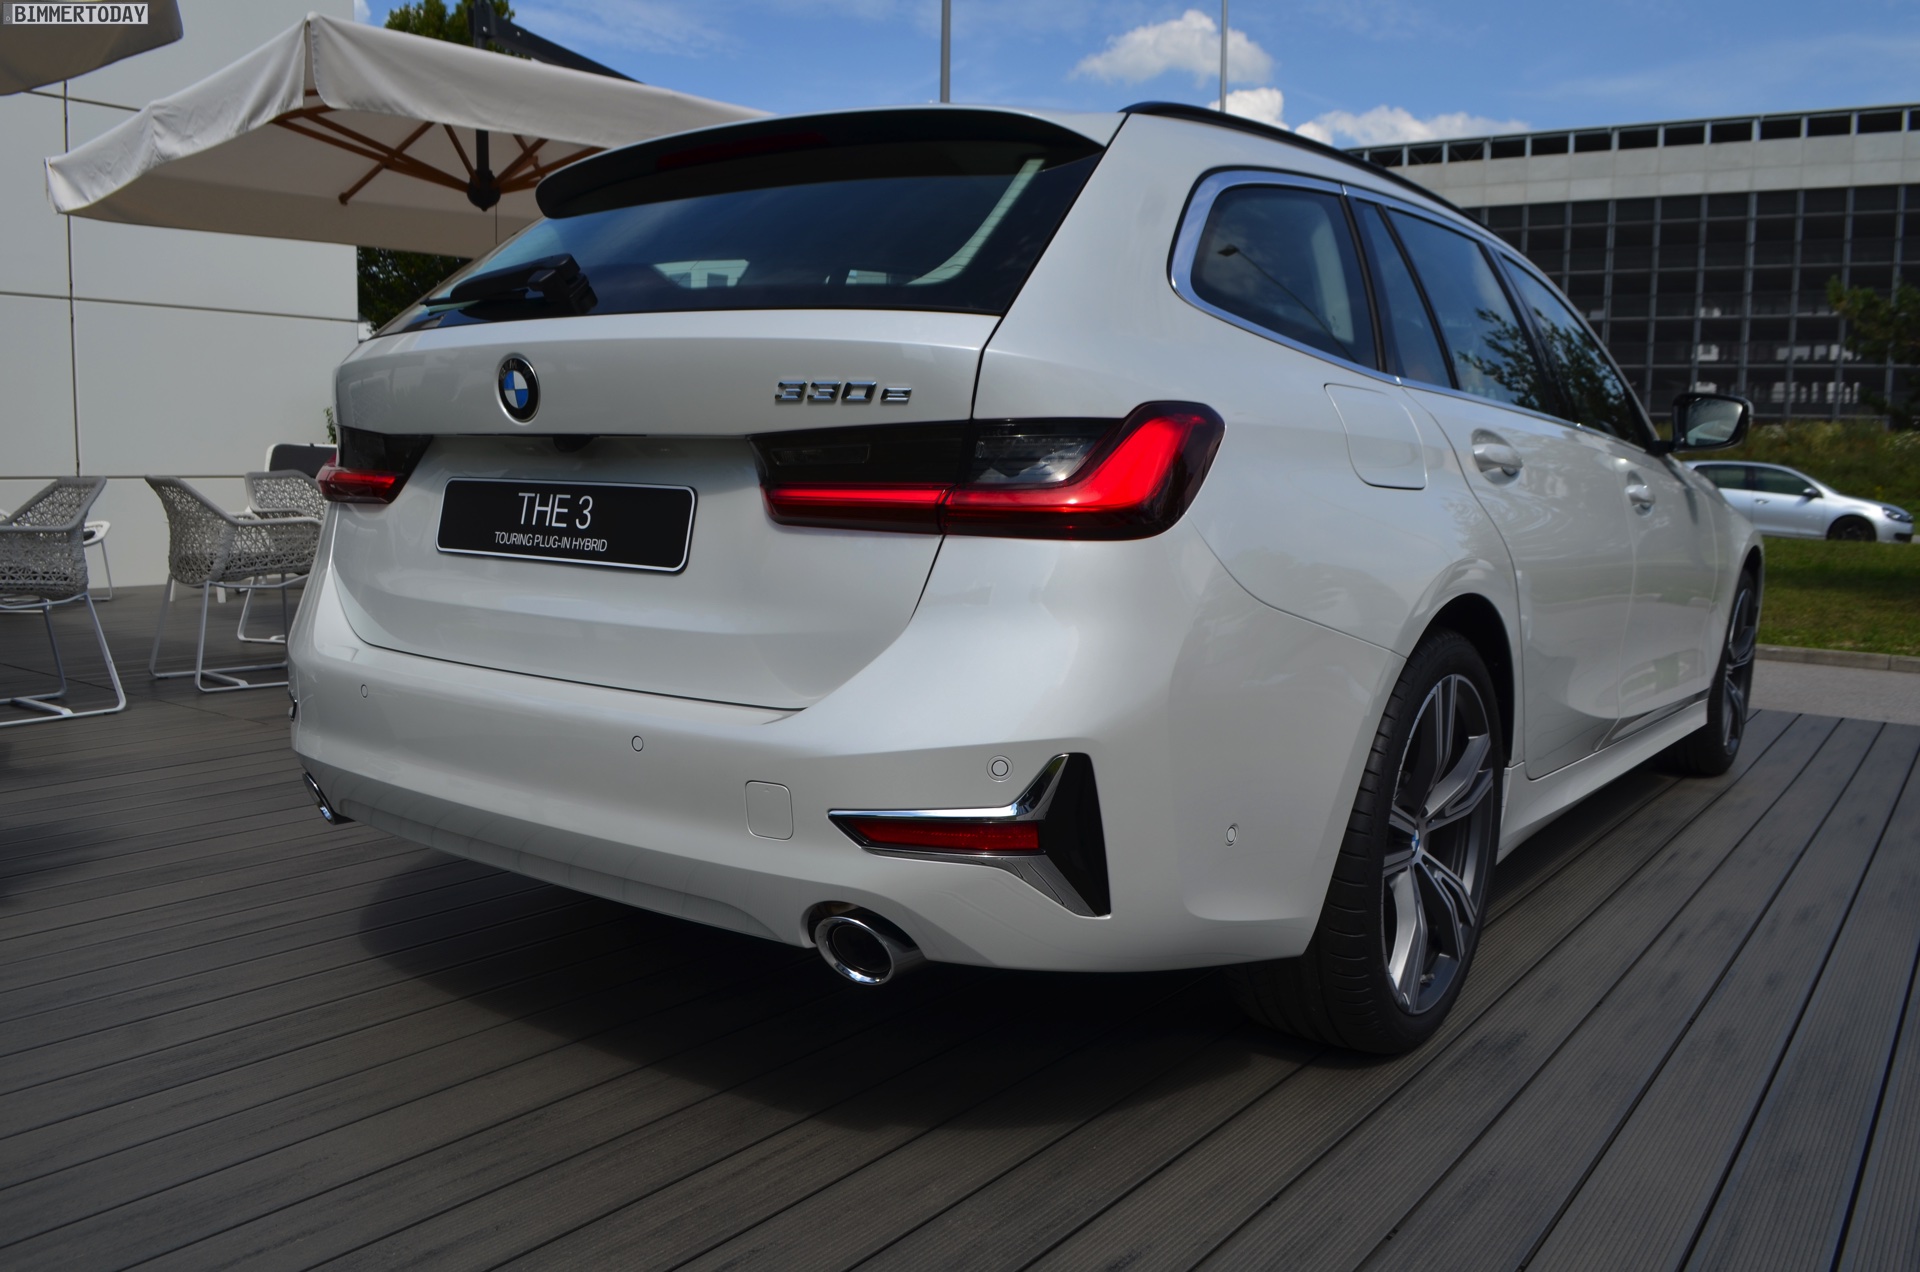 2020-BMW-330e-Touring-G21-3er-Plug-in-Hybrid-06.jpg